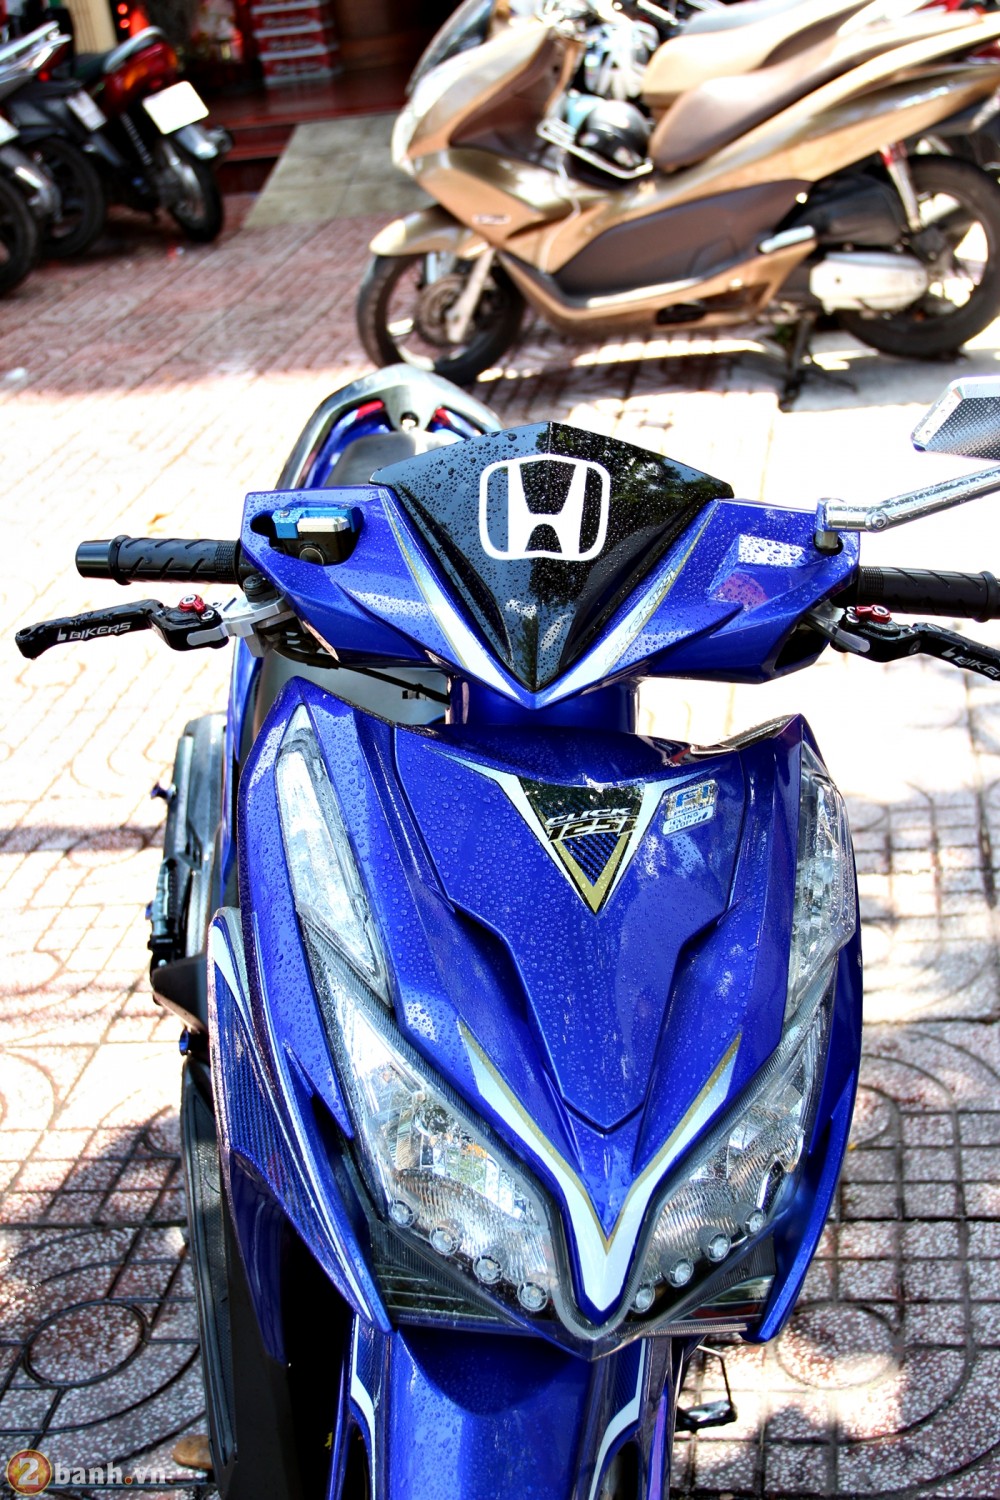 Honda Click do tinh cam - 3